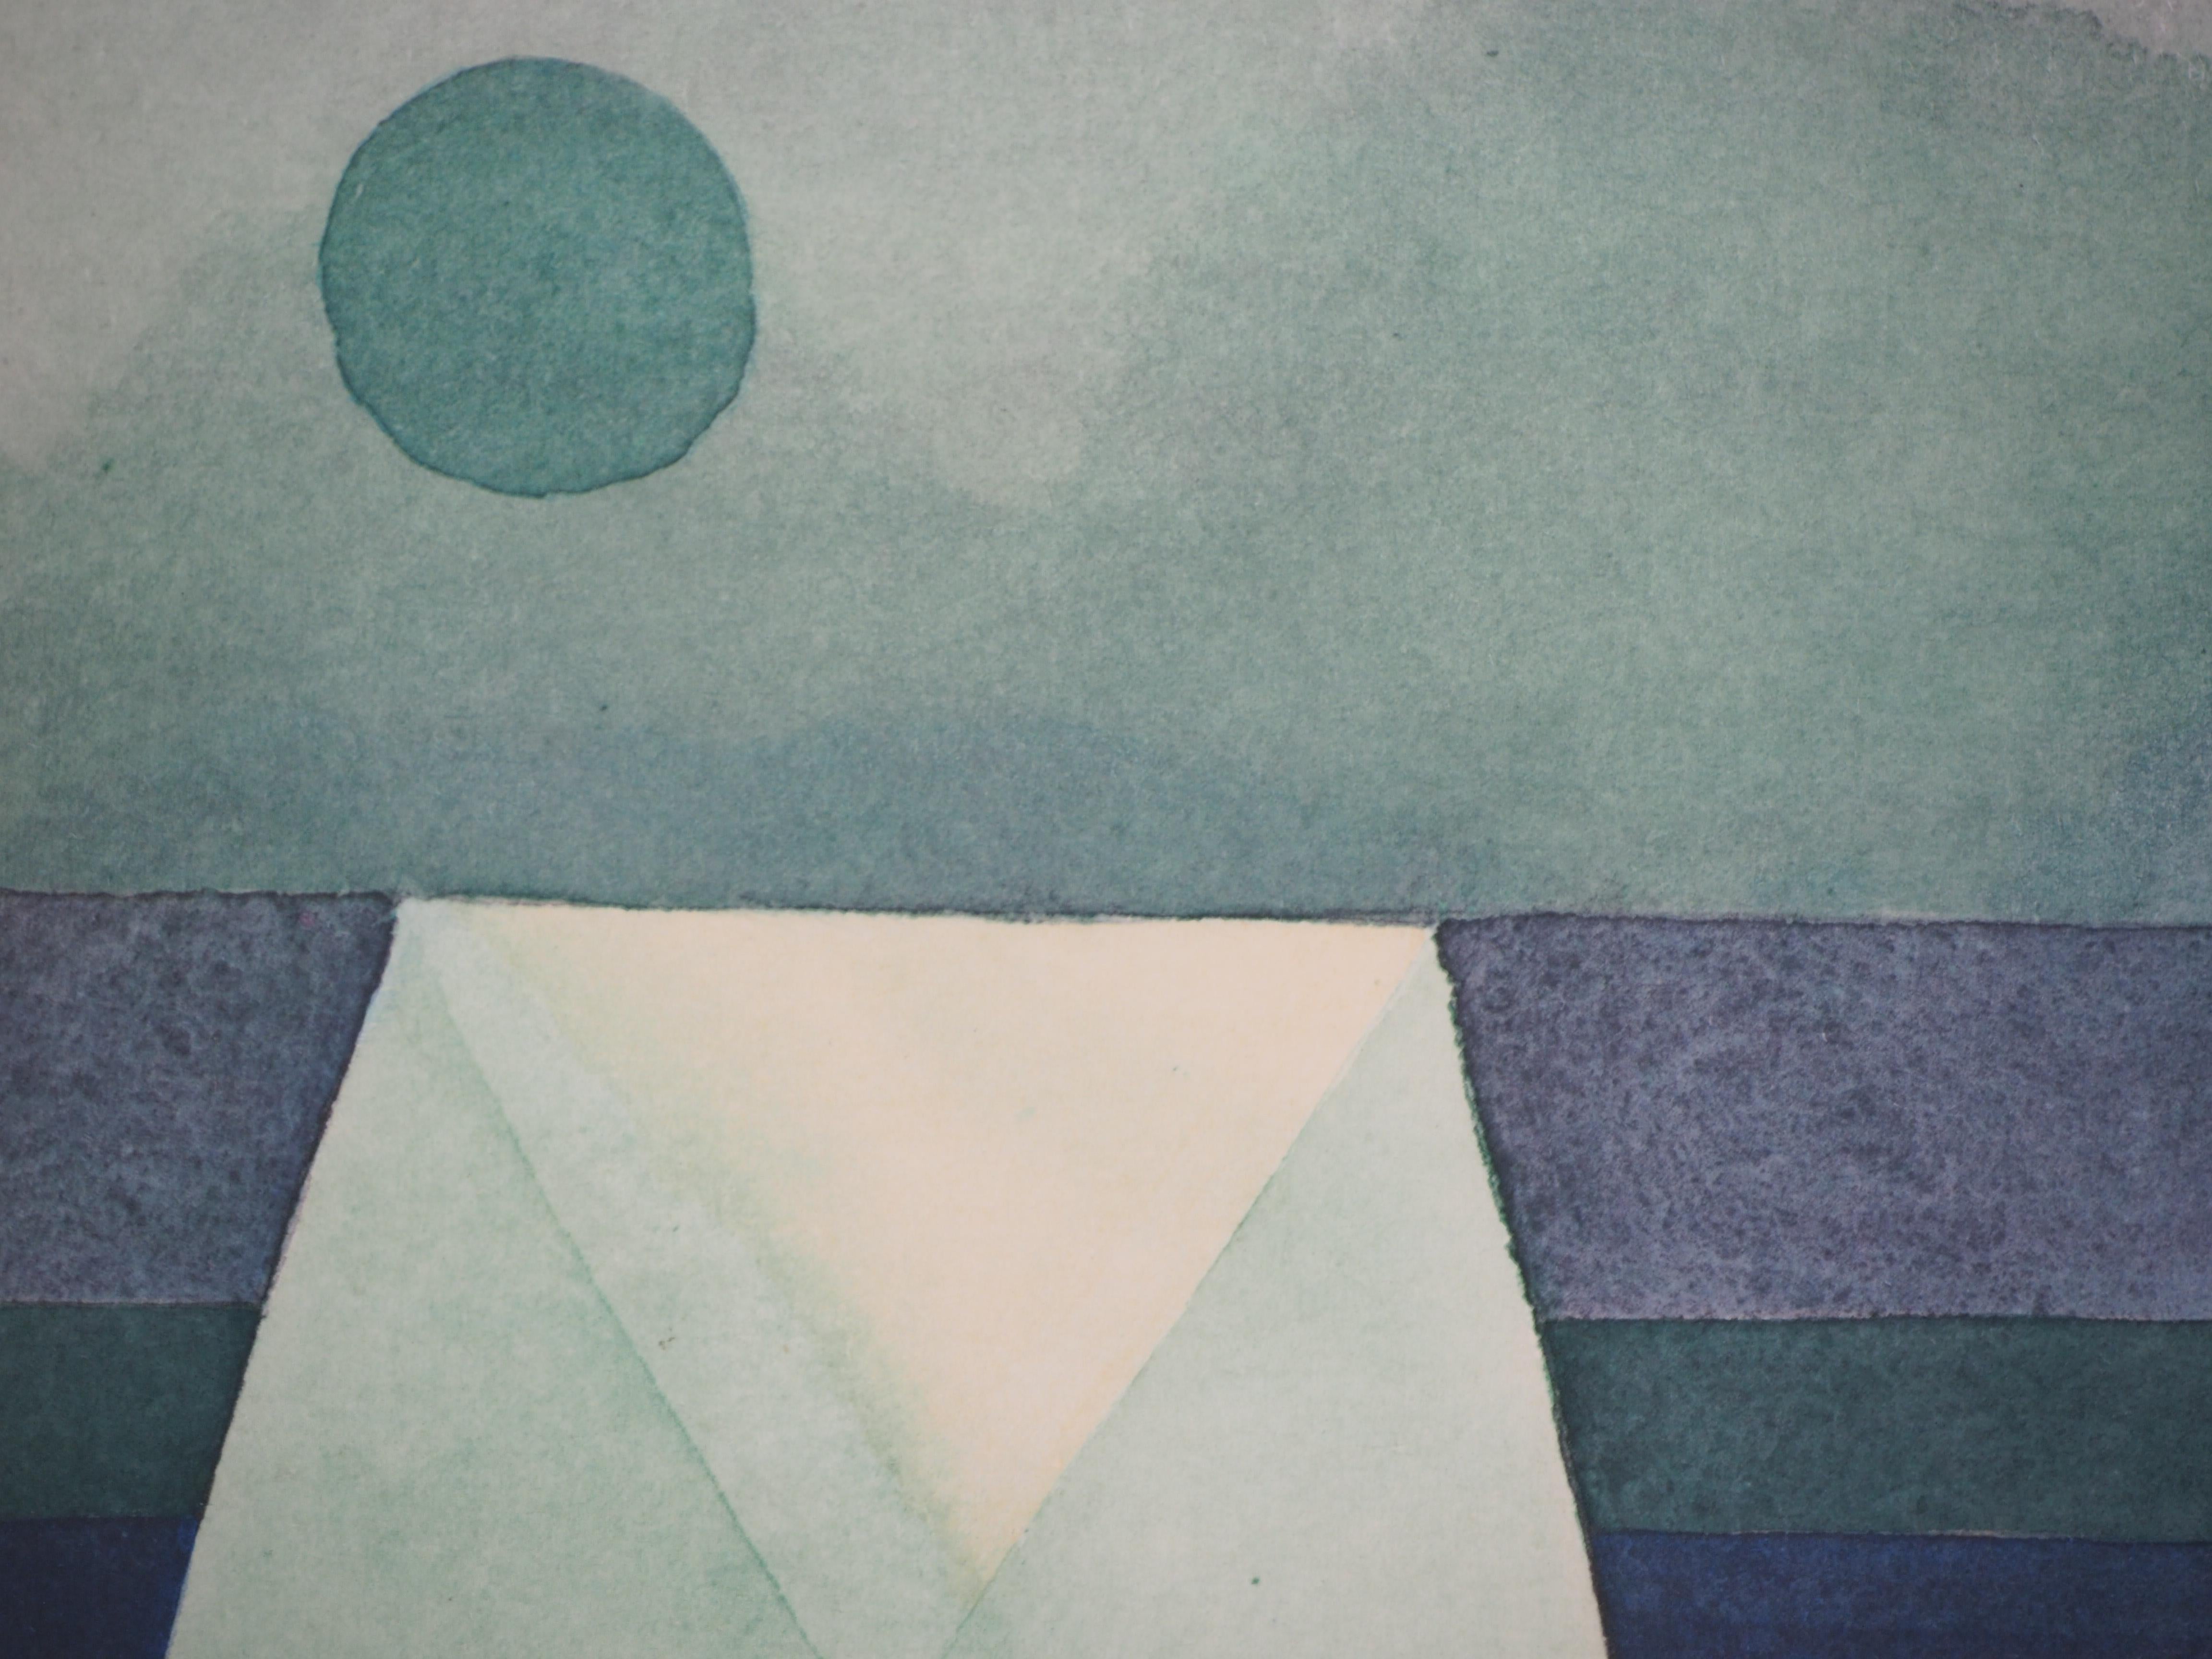 Trois maisons, dégradation vert-violet - Lithographie et pochoir - Moderne Art par (after) Paul Klee